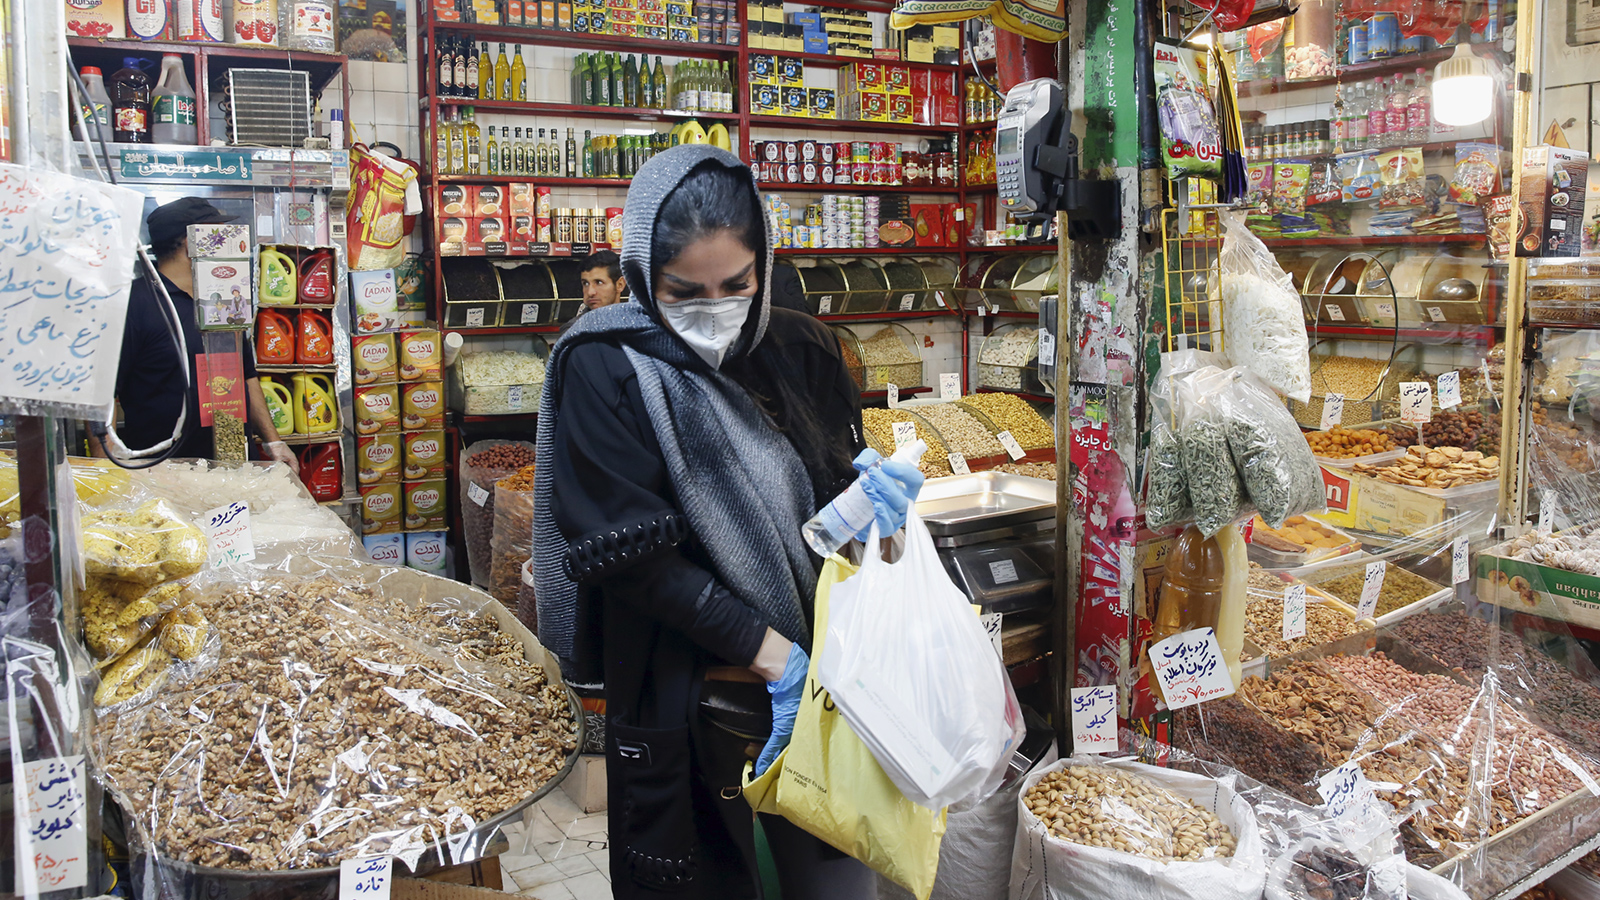 ‪مواطنة إيرانية داخل أحد المحلات التجارية بالعاصمة‬  (الأوروبية) 